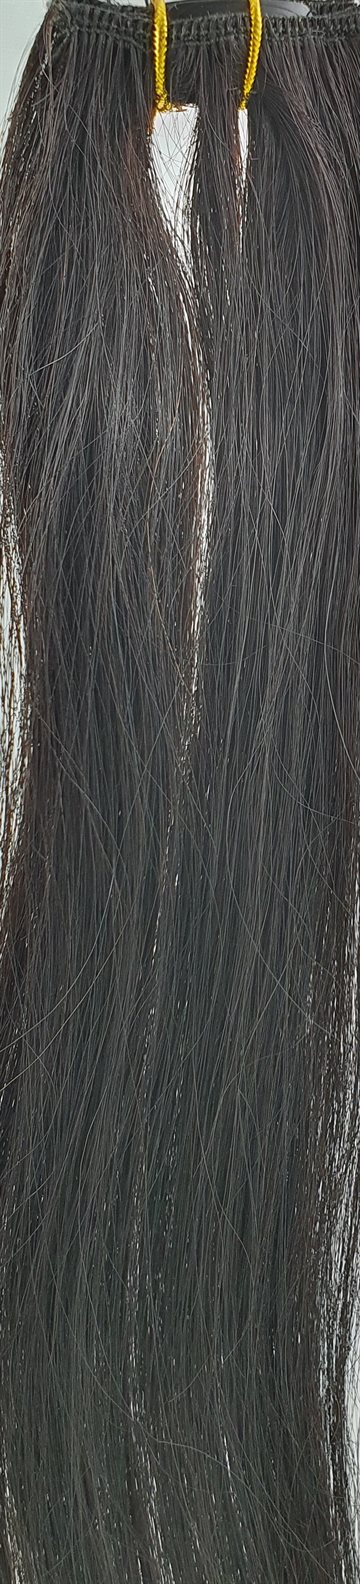 Human Hair - Clip on hair (4 clips) color 1 - 18" (45 cm. length.)